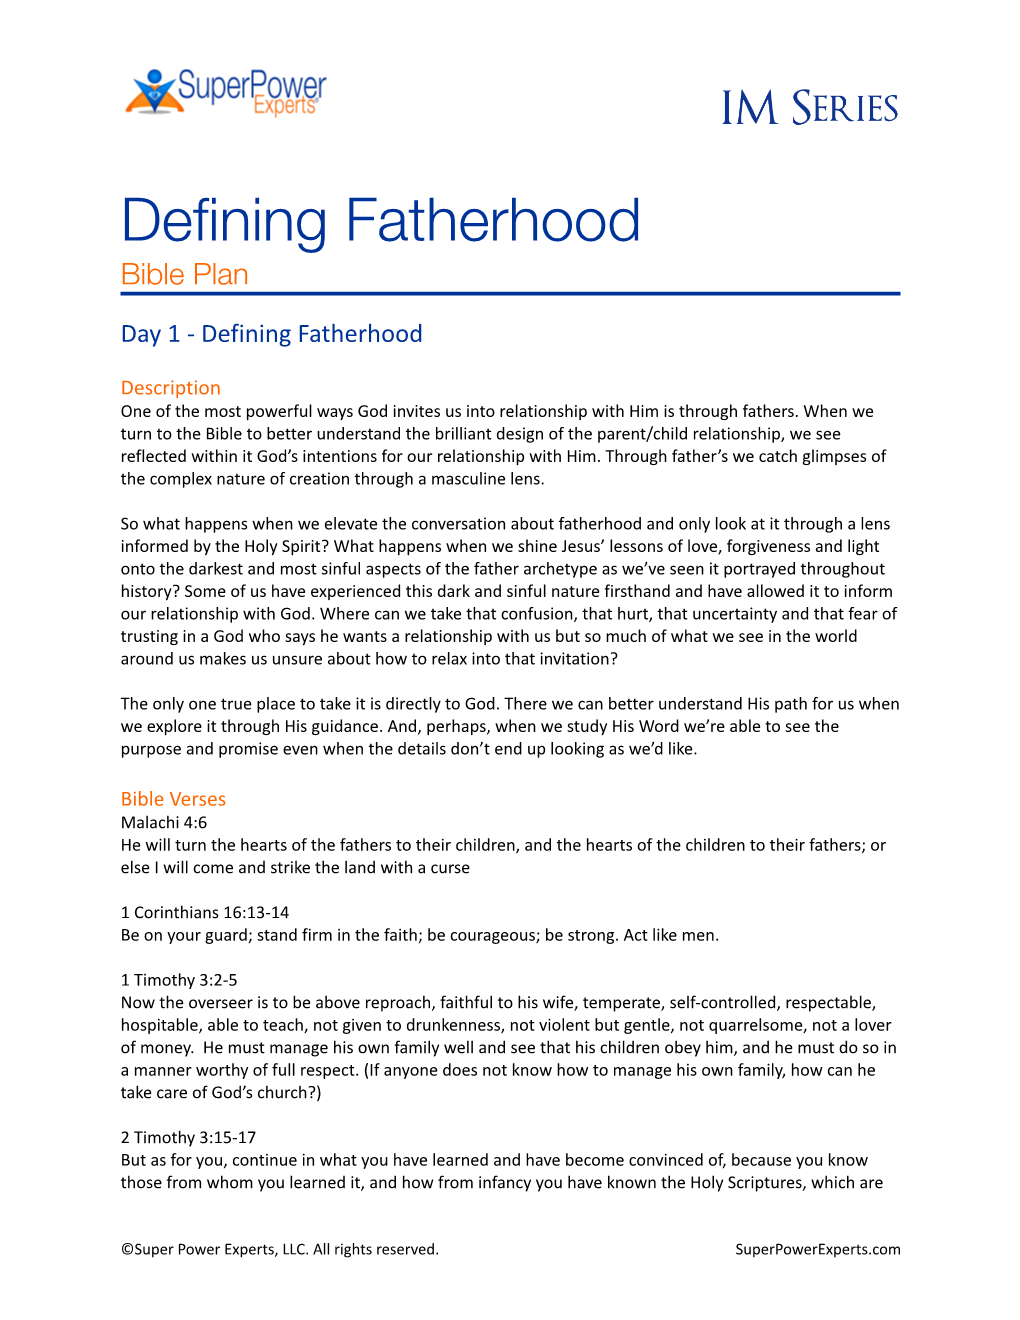 Defining Fatherhood Bible Plan